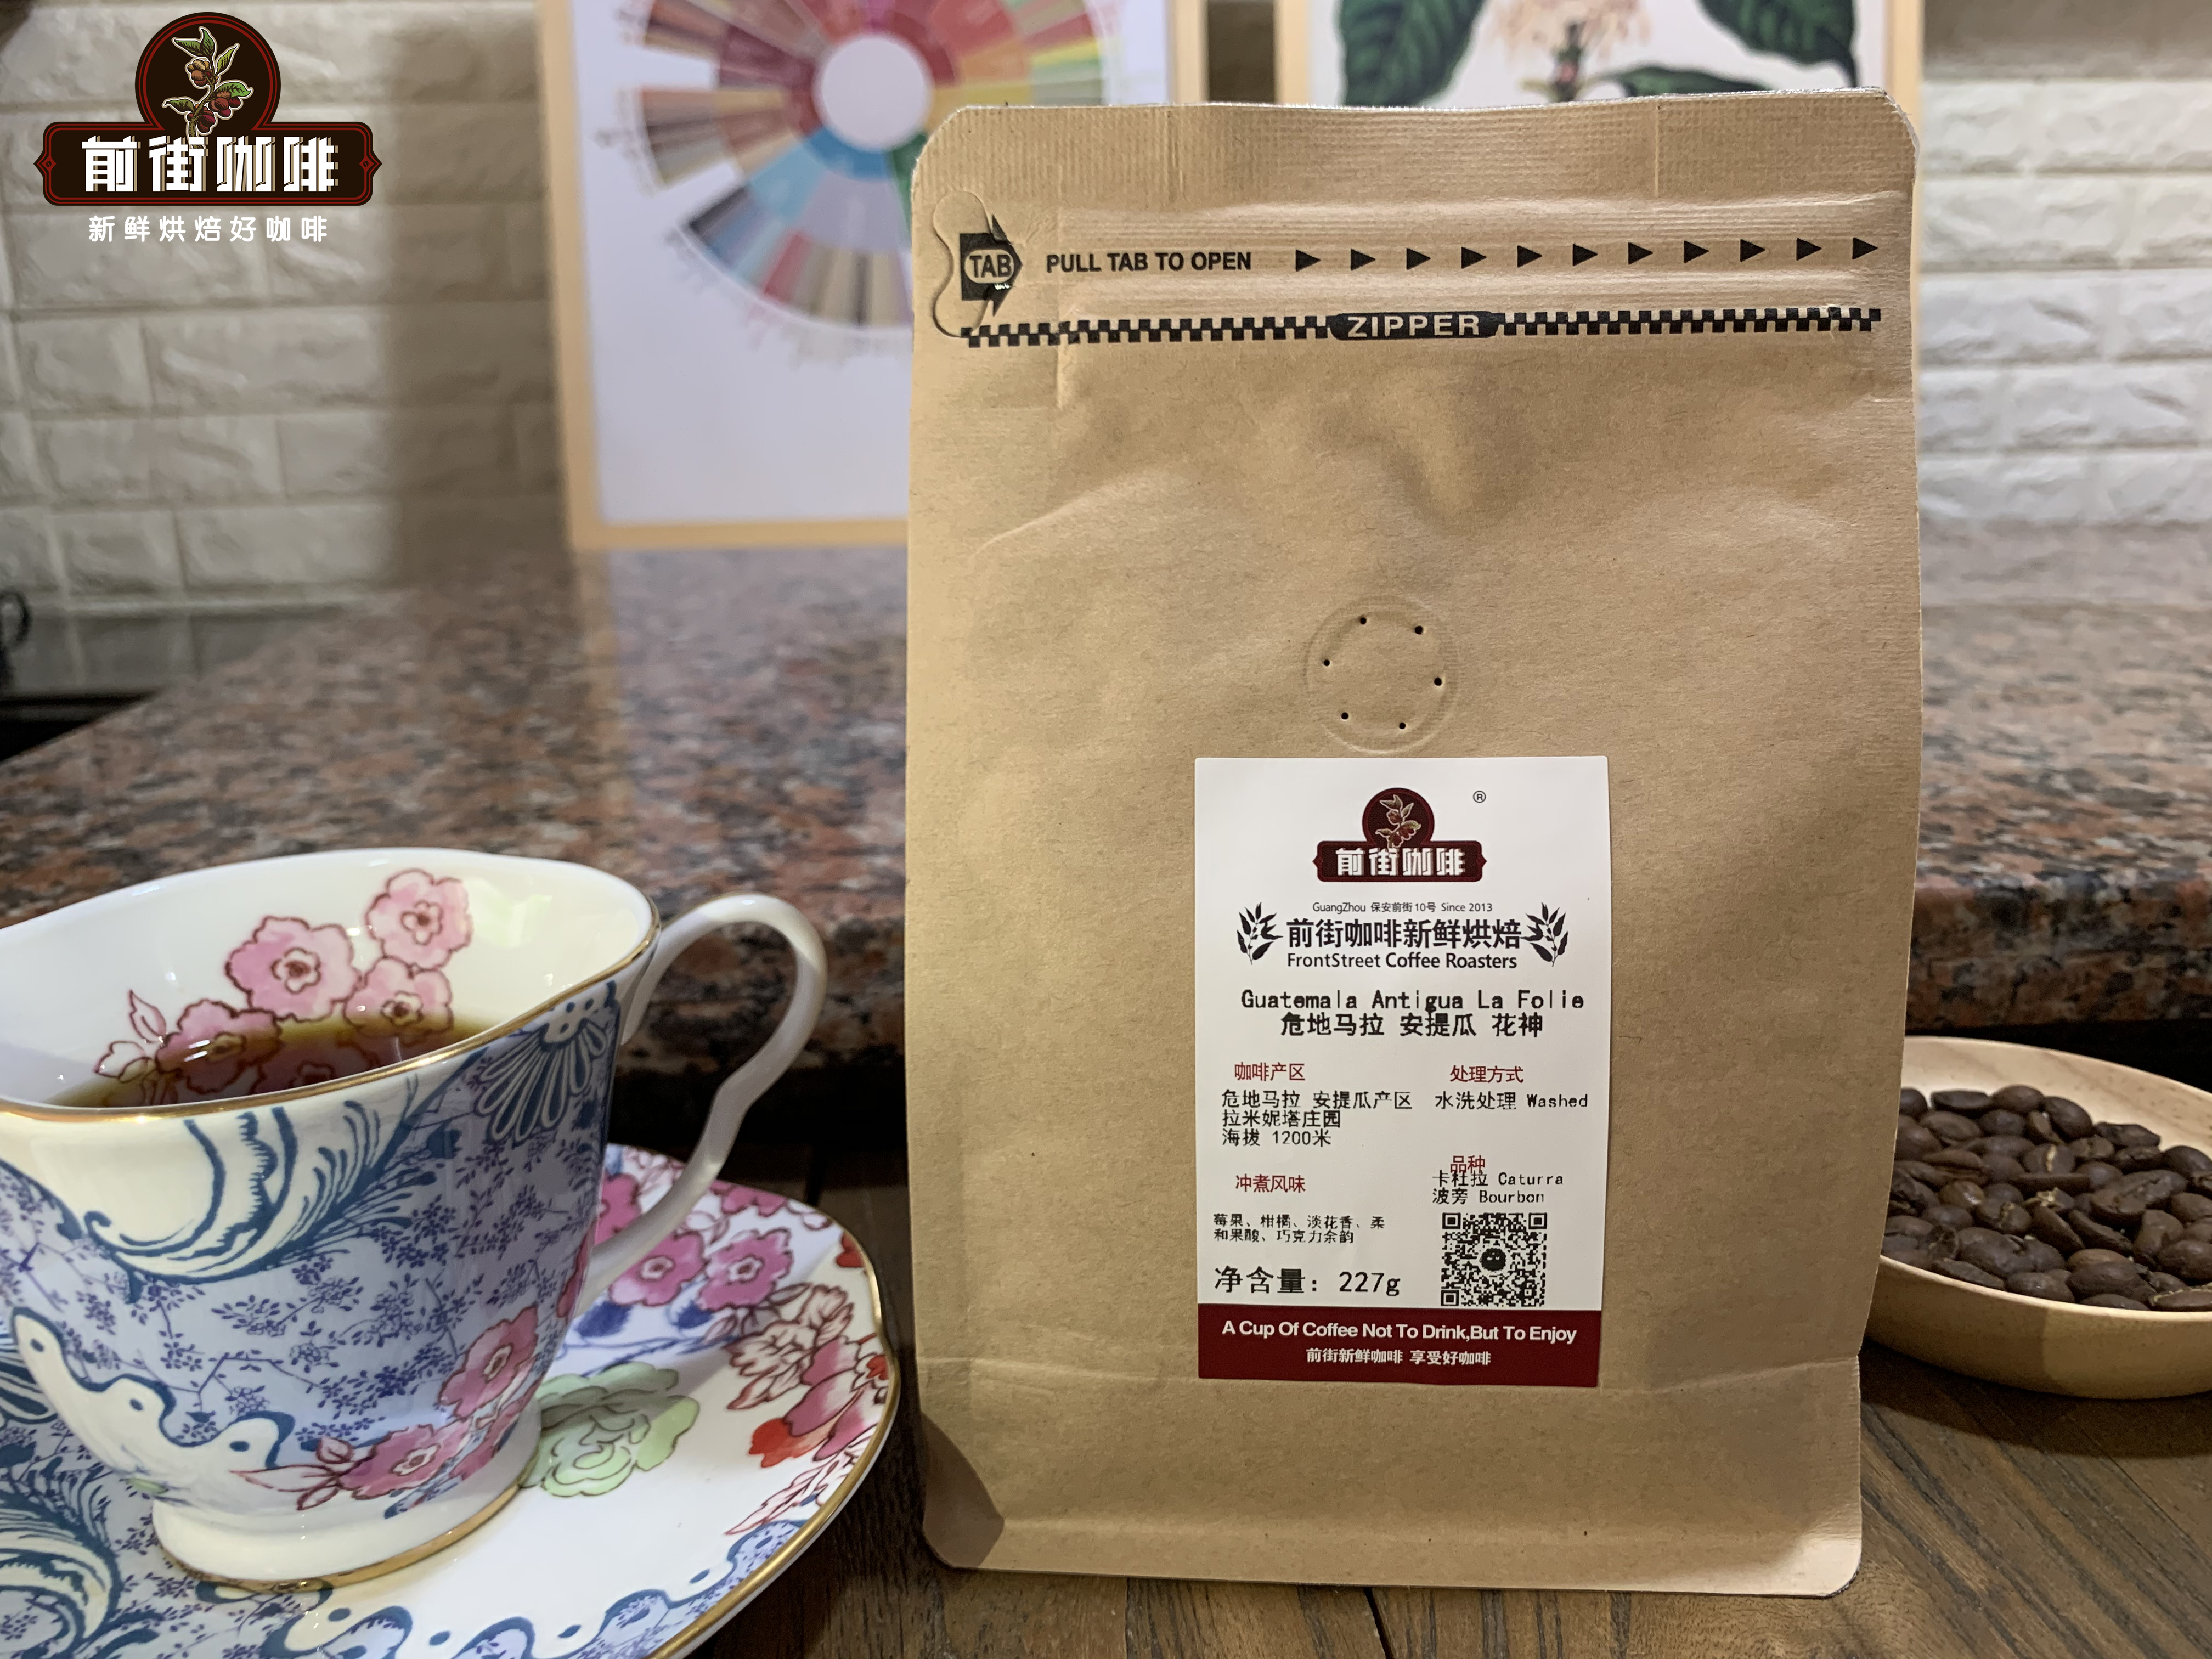 危地马拉咖啡豆(SHB)是指海拔最高的意思吗?安提瓜咖啡是最好的吗